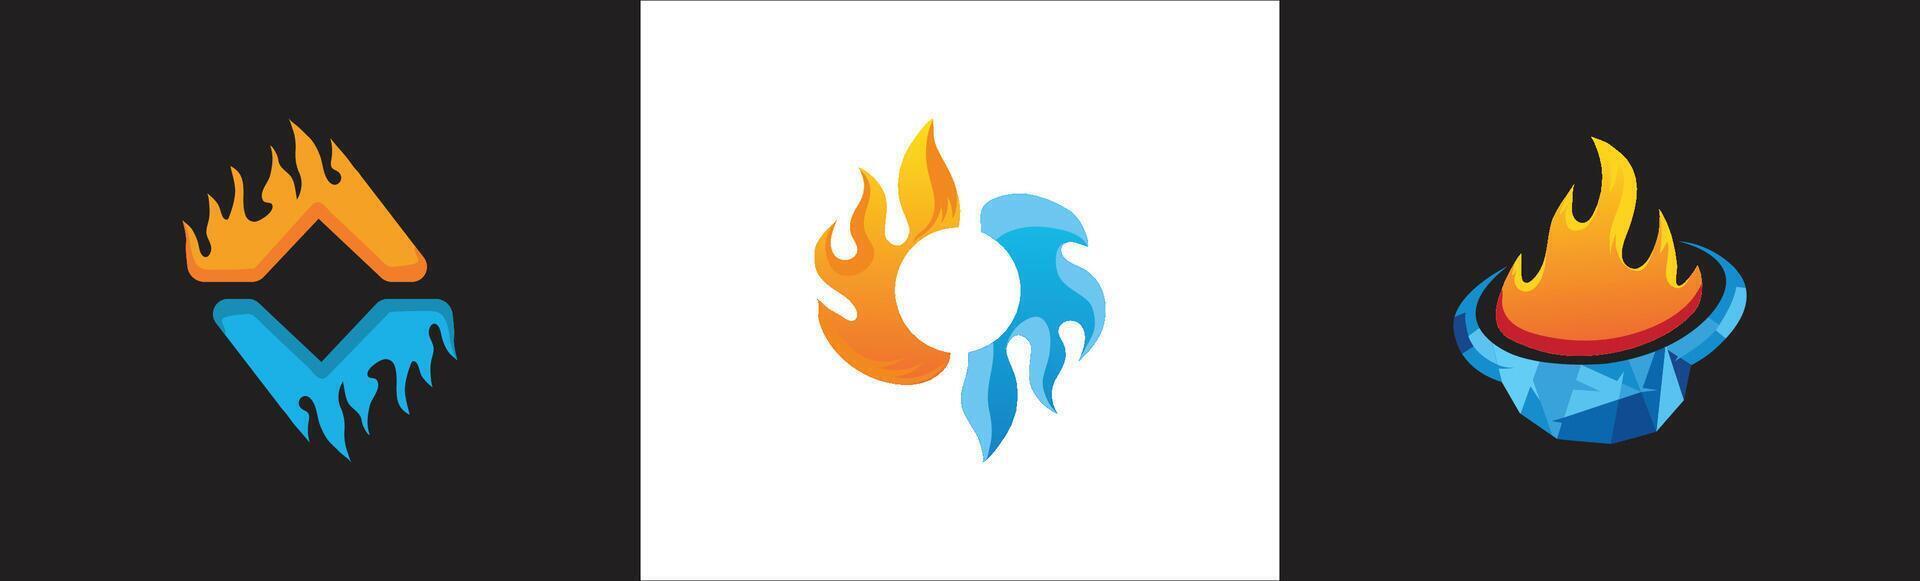 fuego hielo logo colección con 3 formas vector